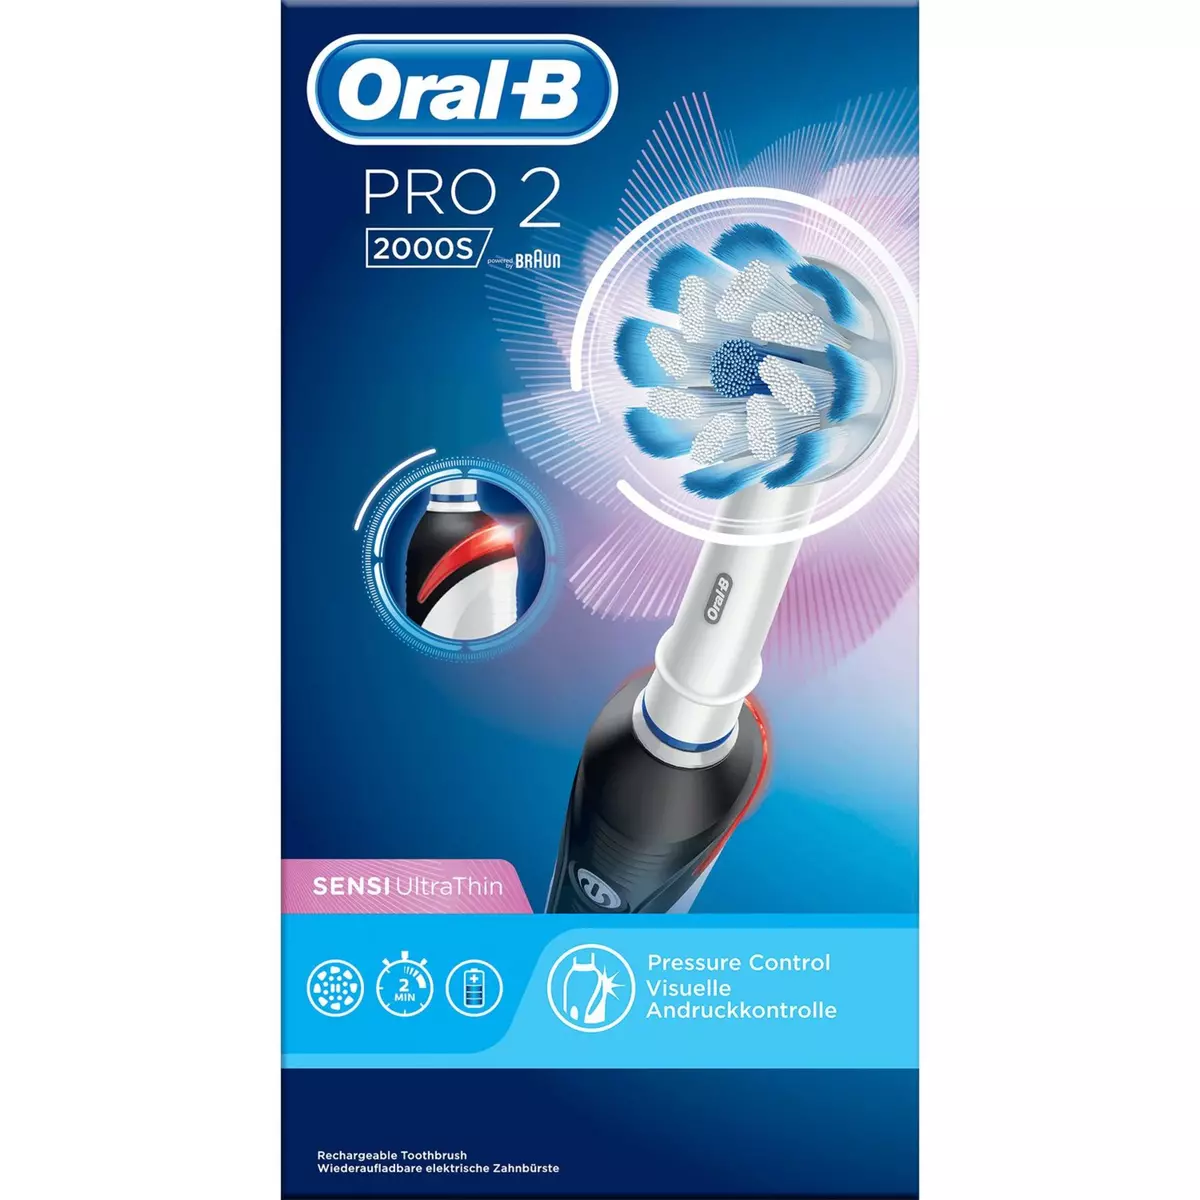 ORAL-B Pro 2 brosse à dents électrique sensi ultrathin 1 brosse